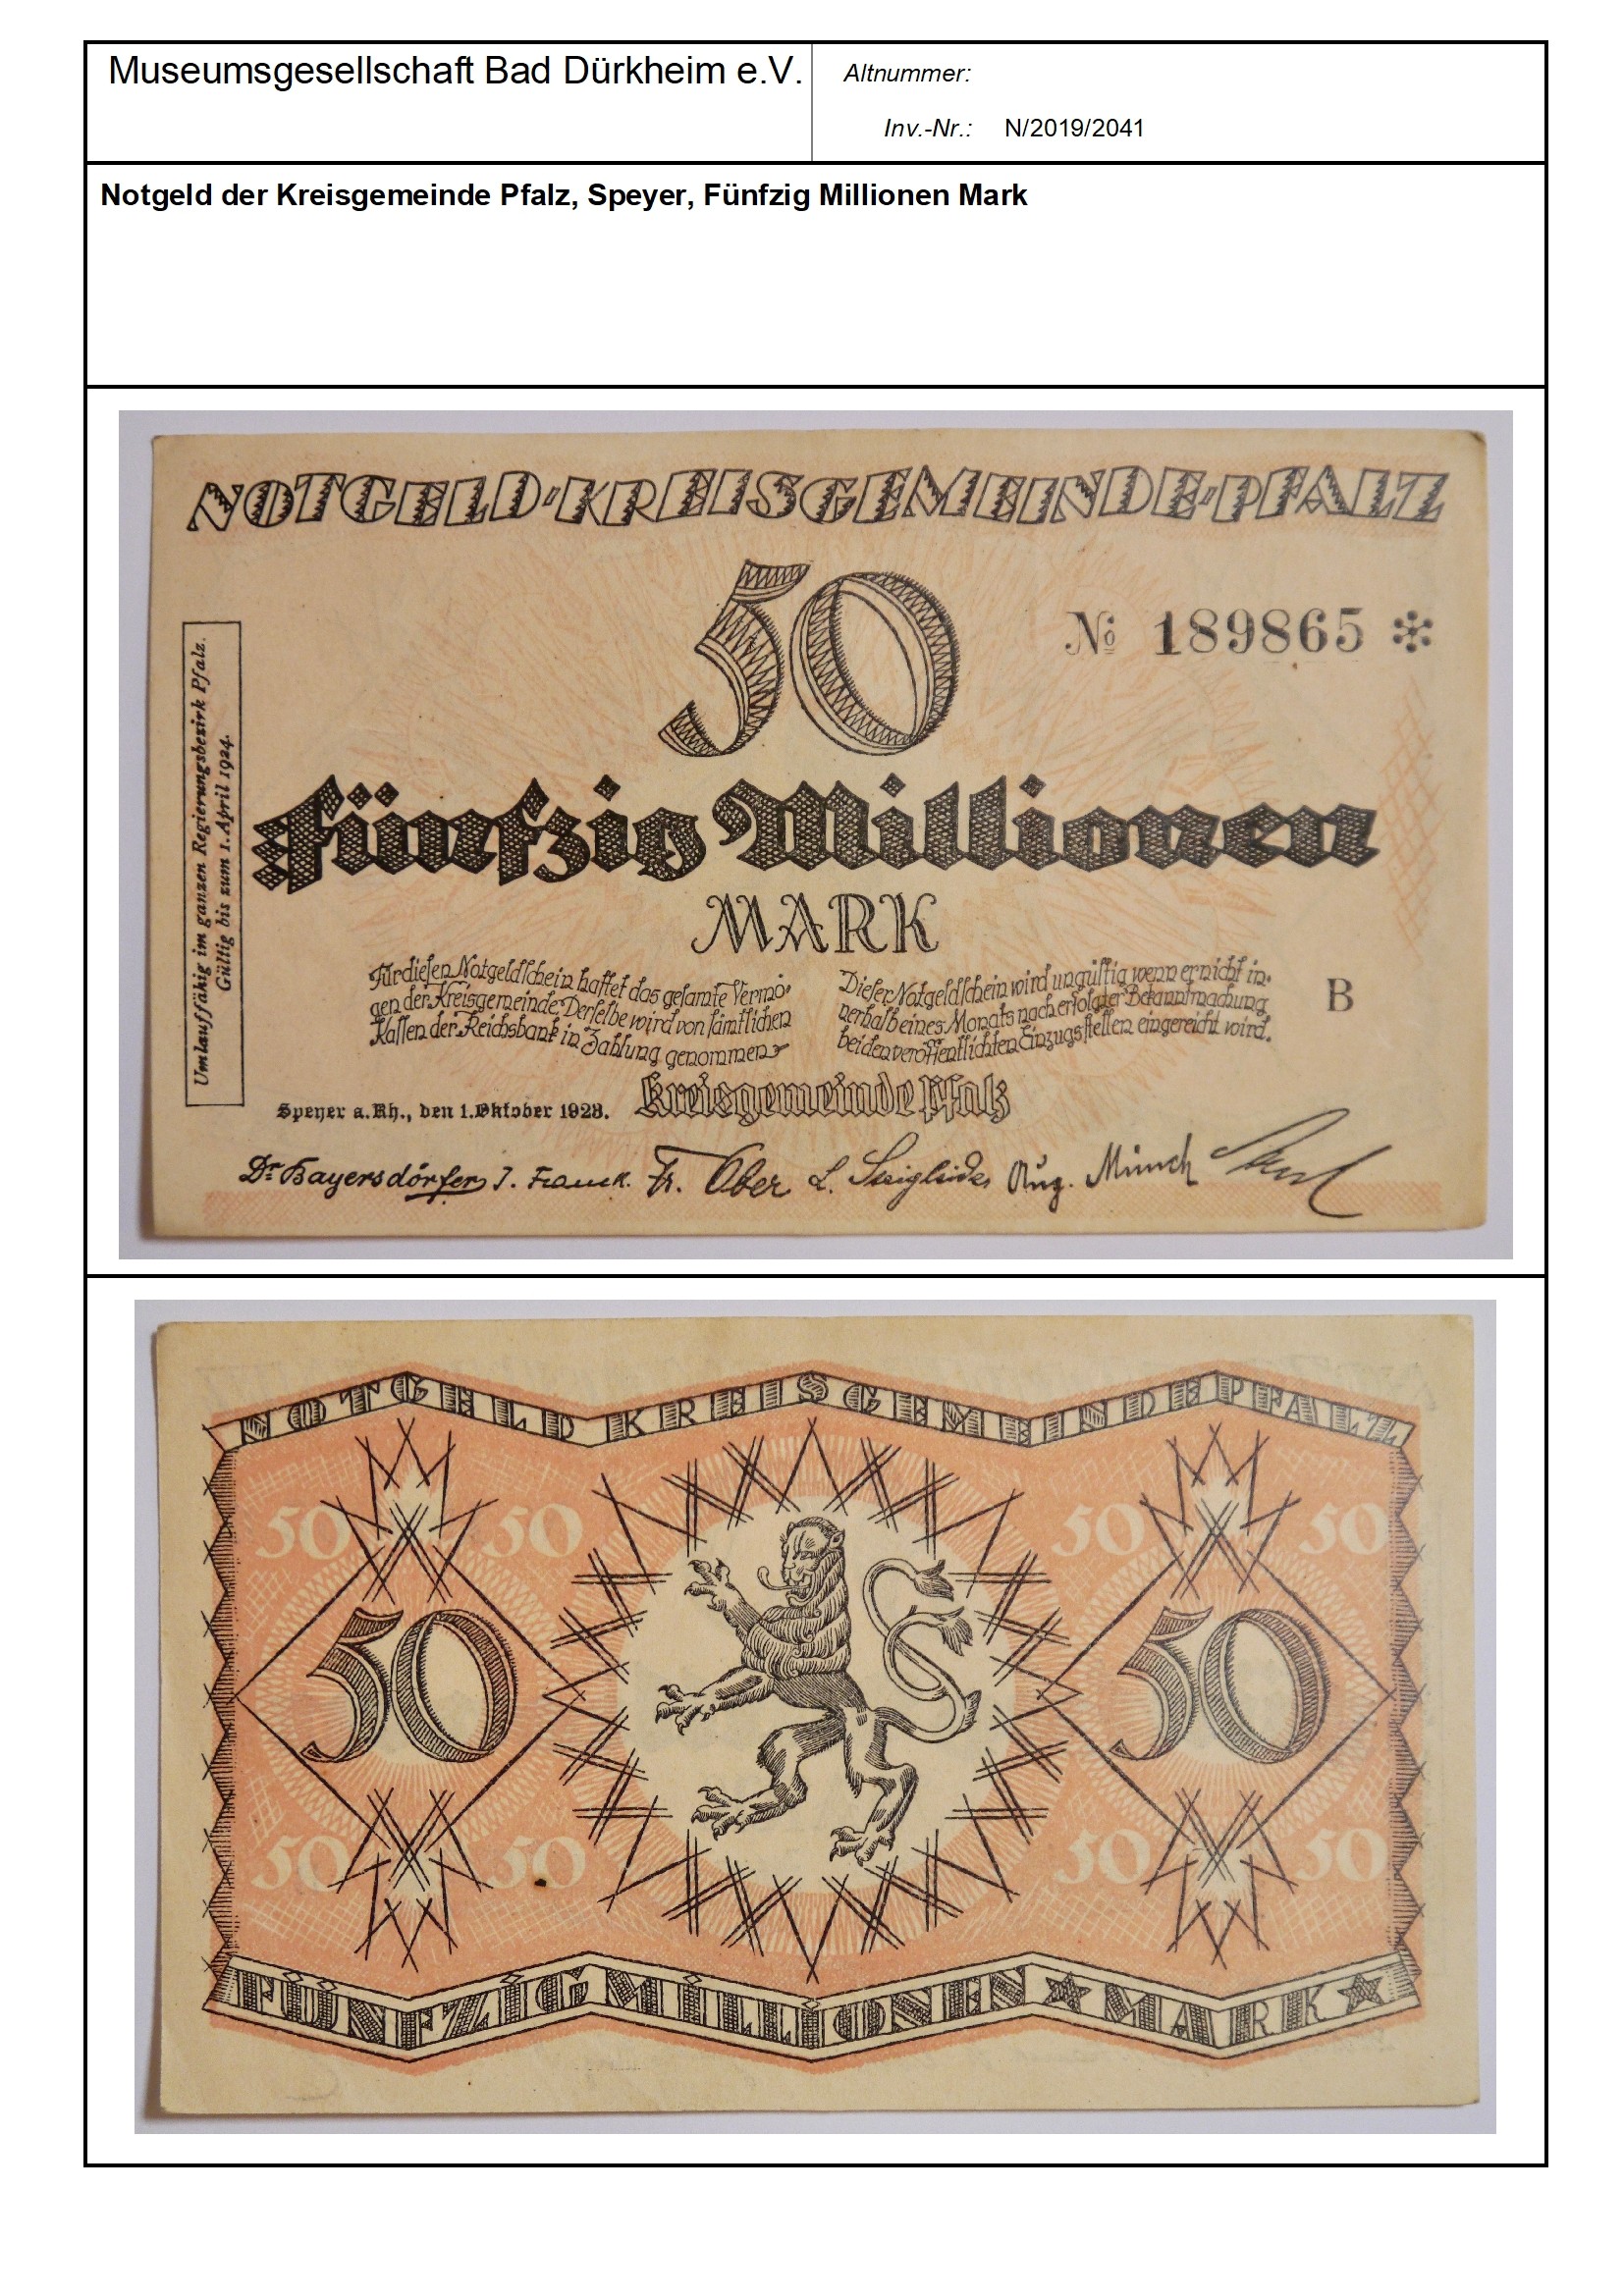 Notgeld der Kreisgemeinde Pfalz, Speyer, Fünfzig Millionen Mark
Serien-Nummer: No 189865 * (Museumsgesellschaft Bad Dürkheim e.V. CC BY-NC-SA)